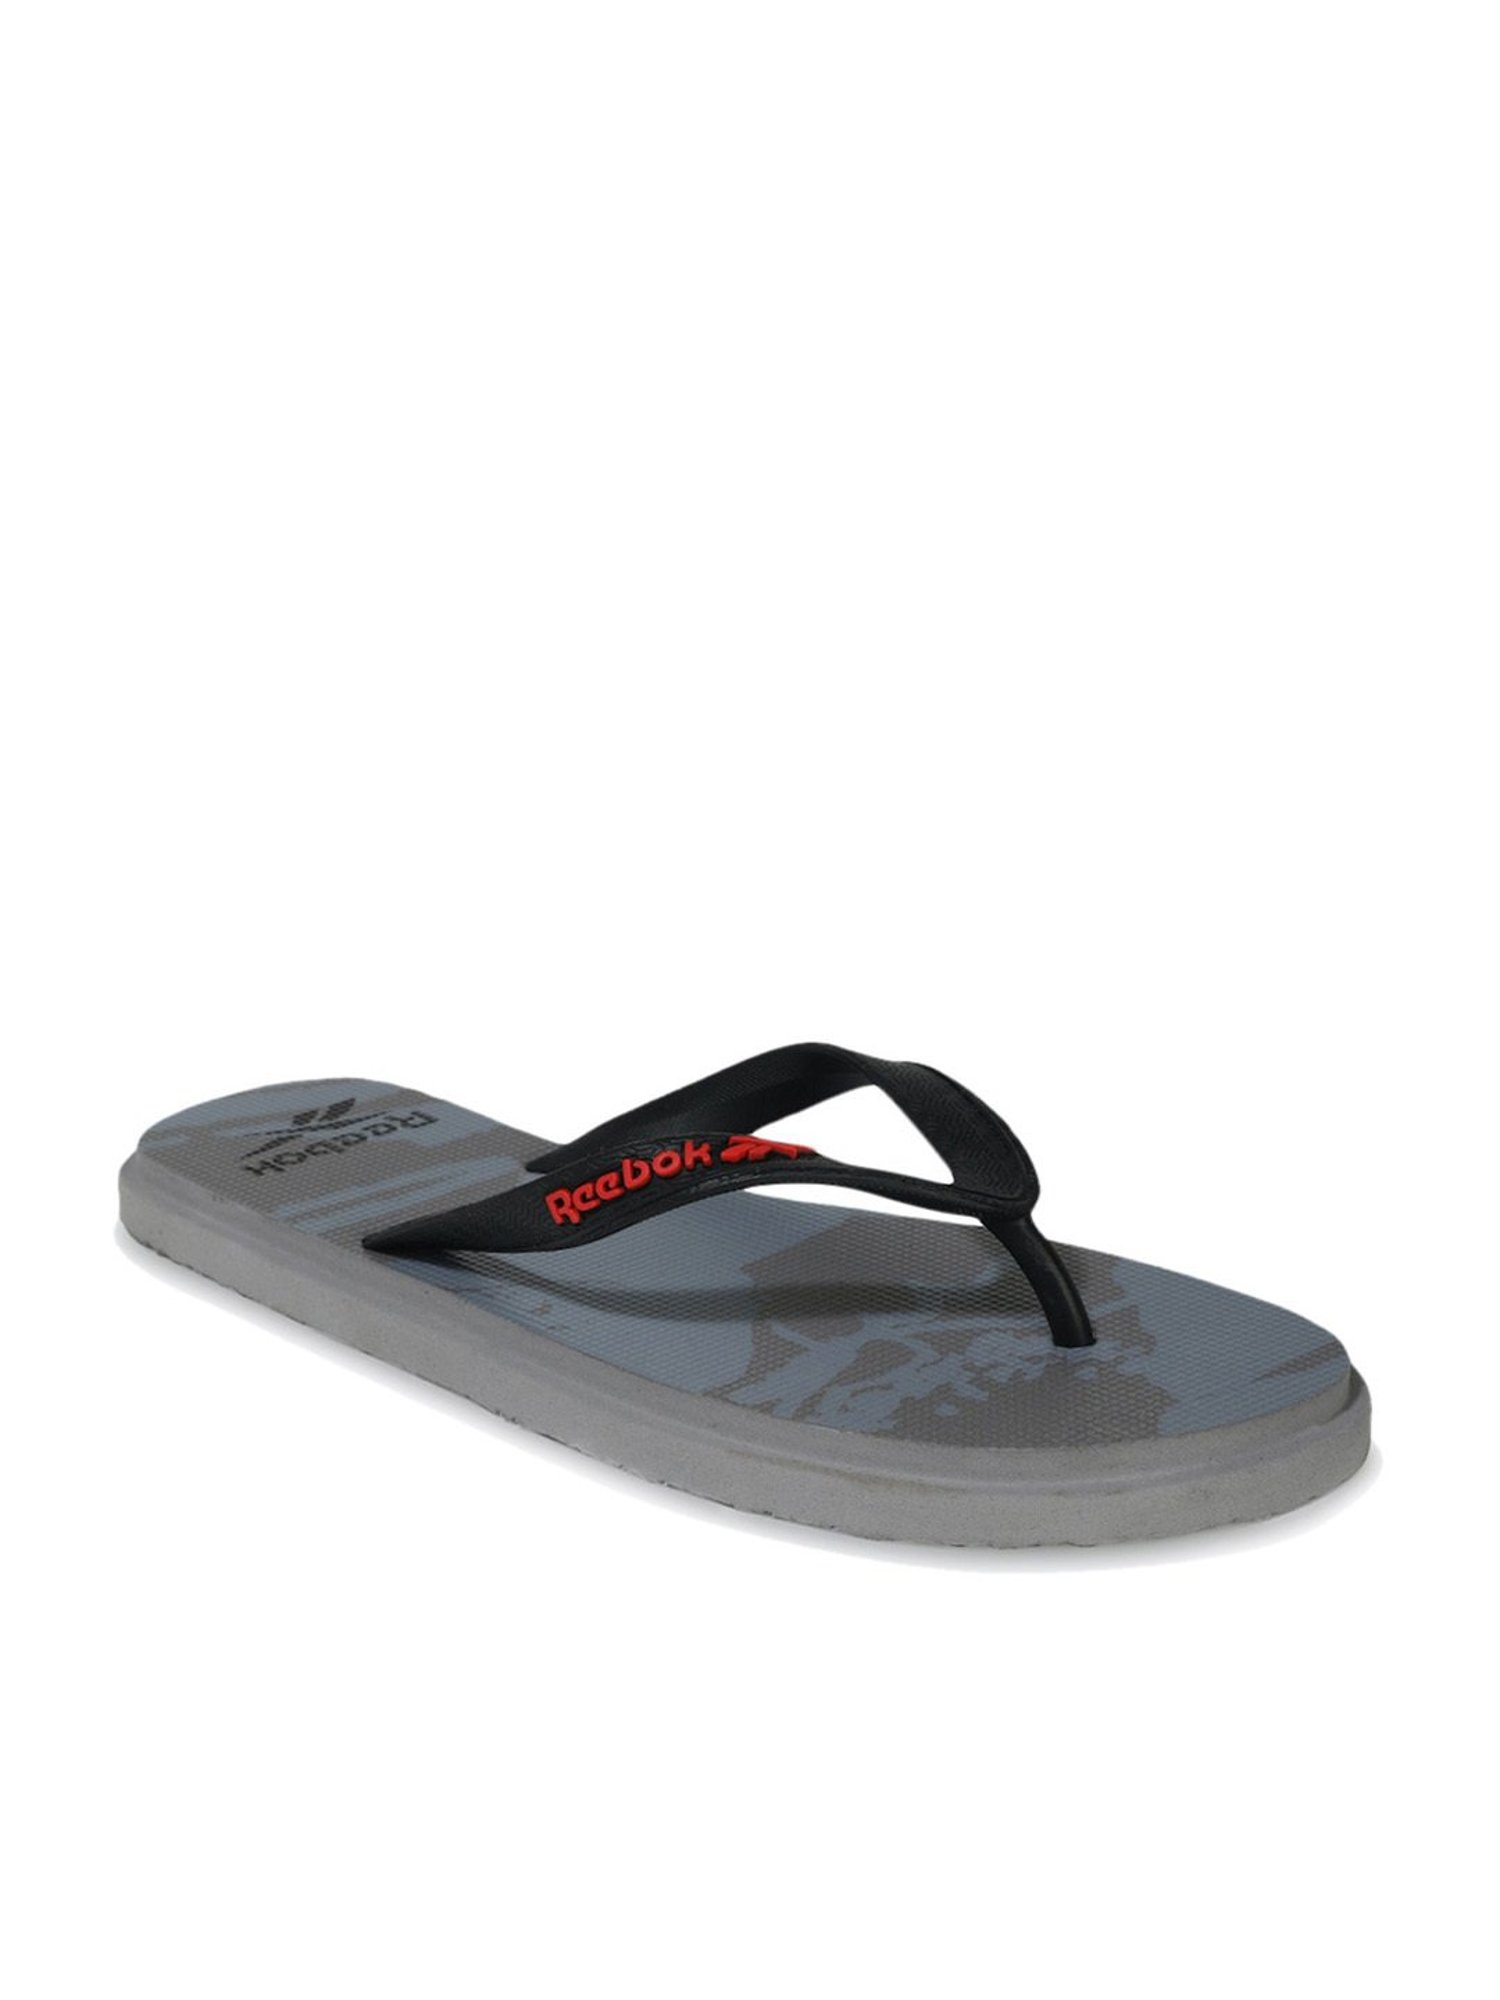 Reebok Ds Comfort Slide Slippers 'Black' - FV8831 | Solesense